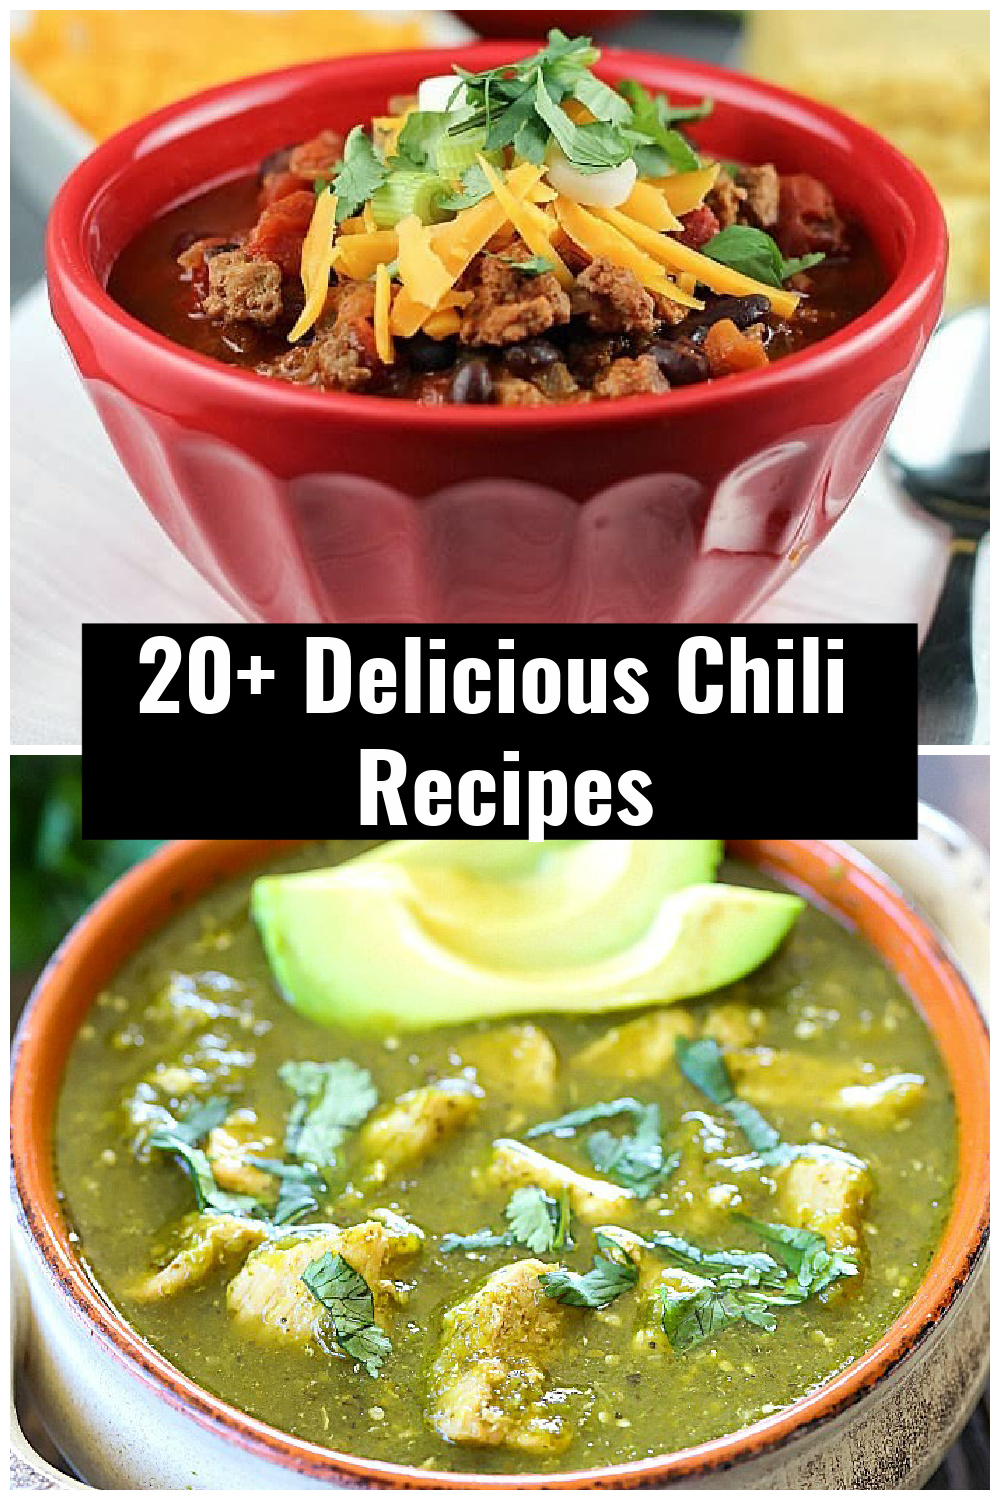   Ez az évszak!  Ideje egy hatalmas tál chilivel!  Íme, több mint 20 chili recept, amelyet el kell készítened ebben a szezonban.  Tekintse meg ezt a 20+ Chili Round Up-ot, ahol remek ötleteket talál arról, hogy milyen chilirecepteket érdemes kipróbálnia!  #chili #körkép #vacsora #vacsoraötletek #receptek a @jennikolauson keresztül